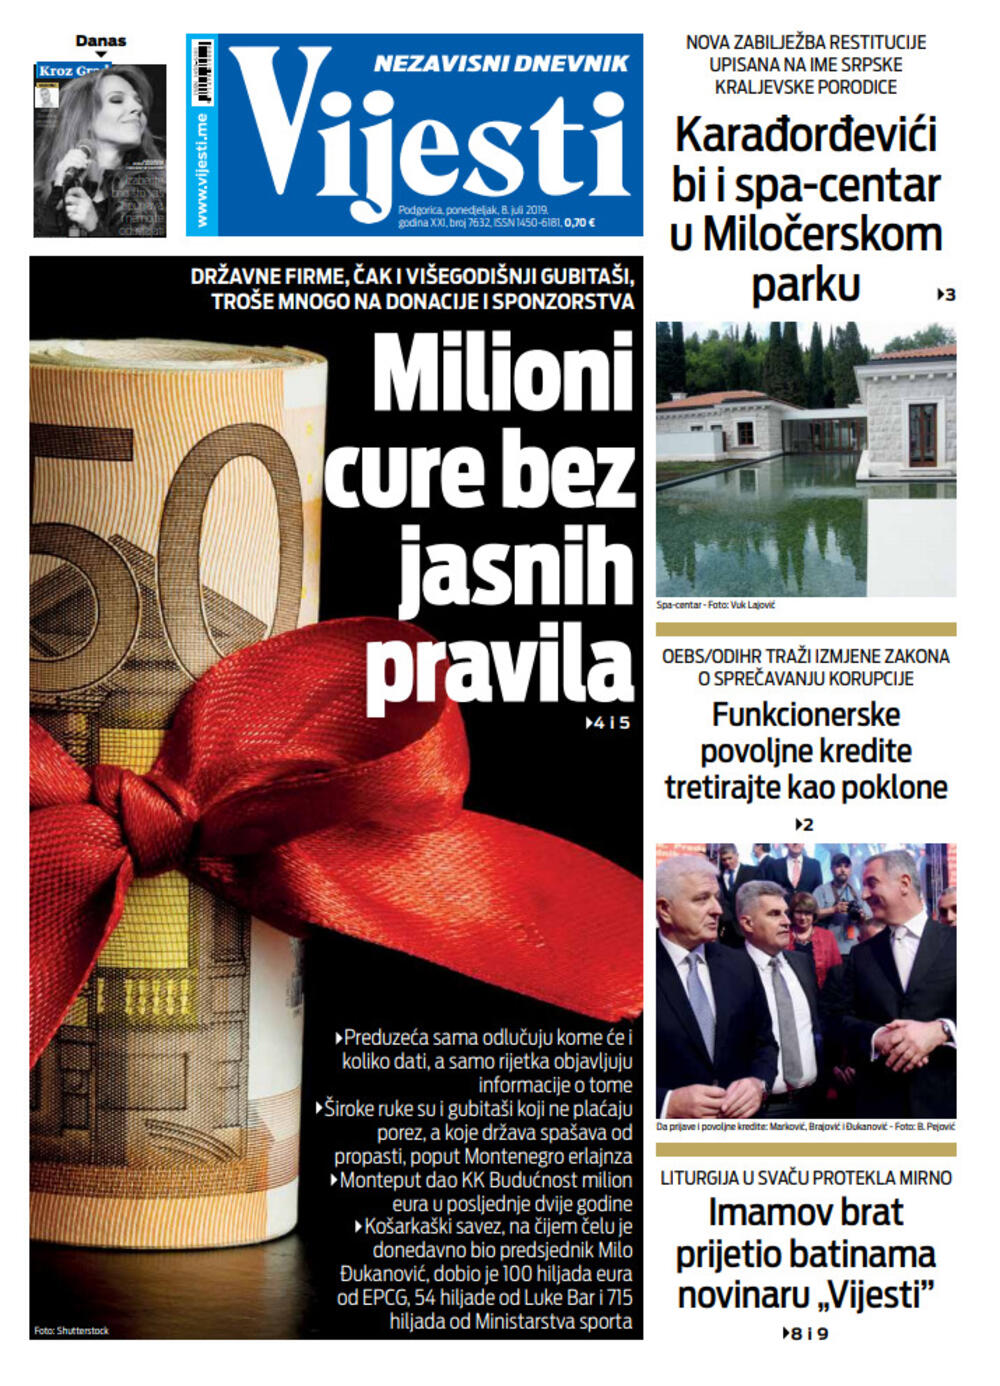 Naslovna strana "Vijesti" za 8. jul, Foto: Vijesti